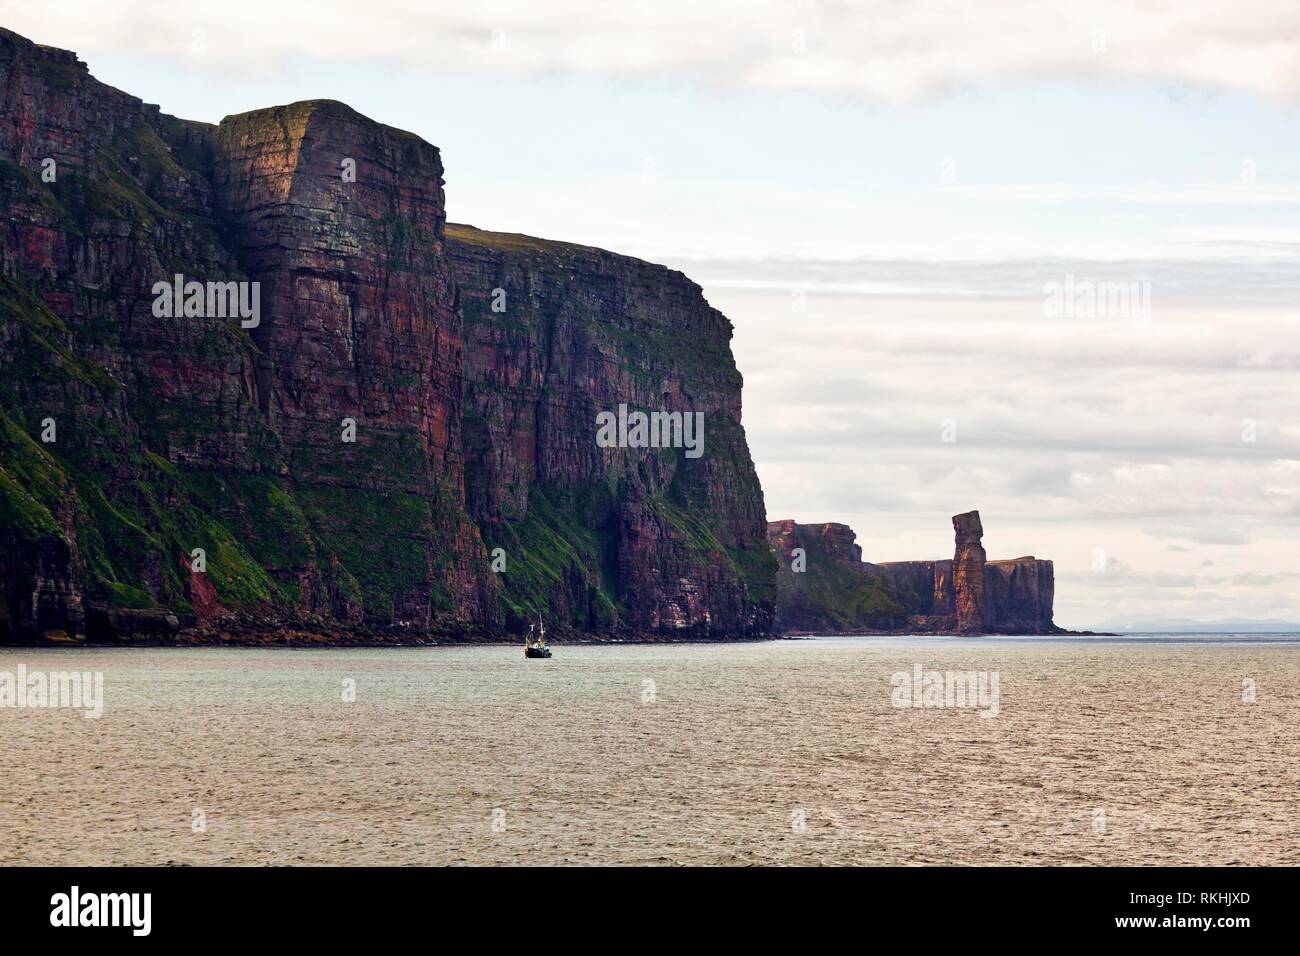 Steilküste, Klippen und Felsen Nadel des alten Mannes Hoy, Hoy Island, Orkney Inseln, Schottland, Großbritannien Stockfoto